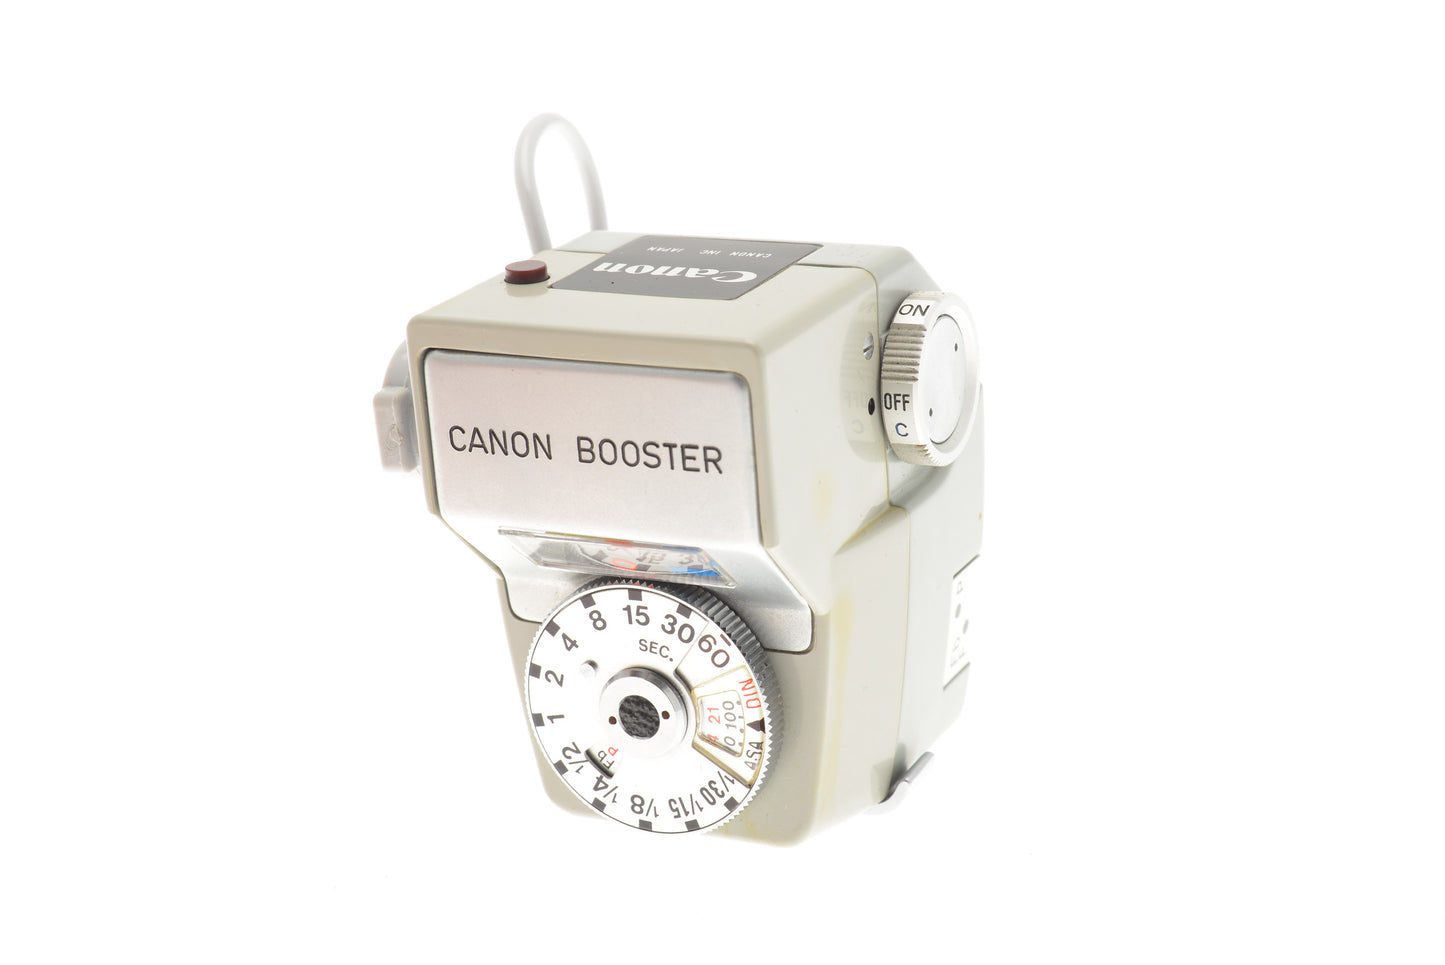 Canon Booster - Accessory